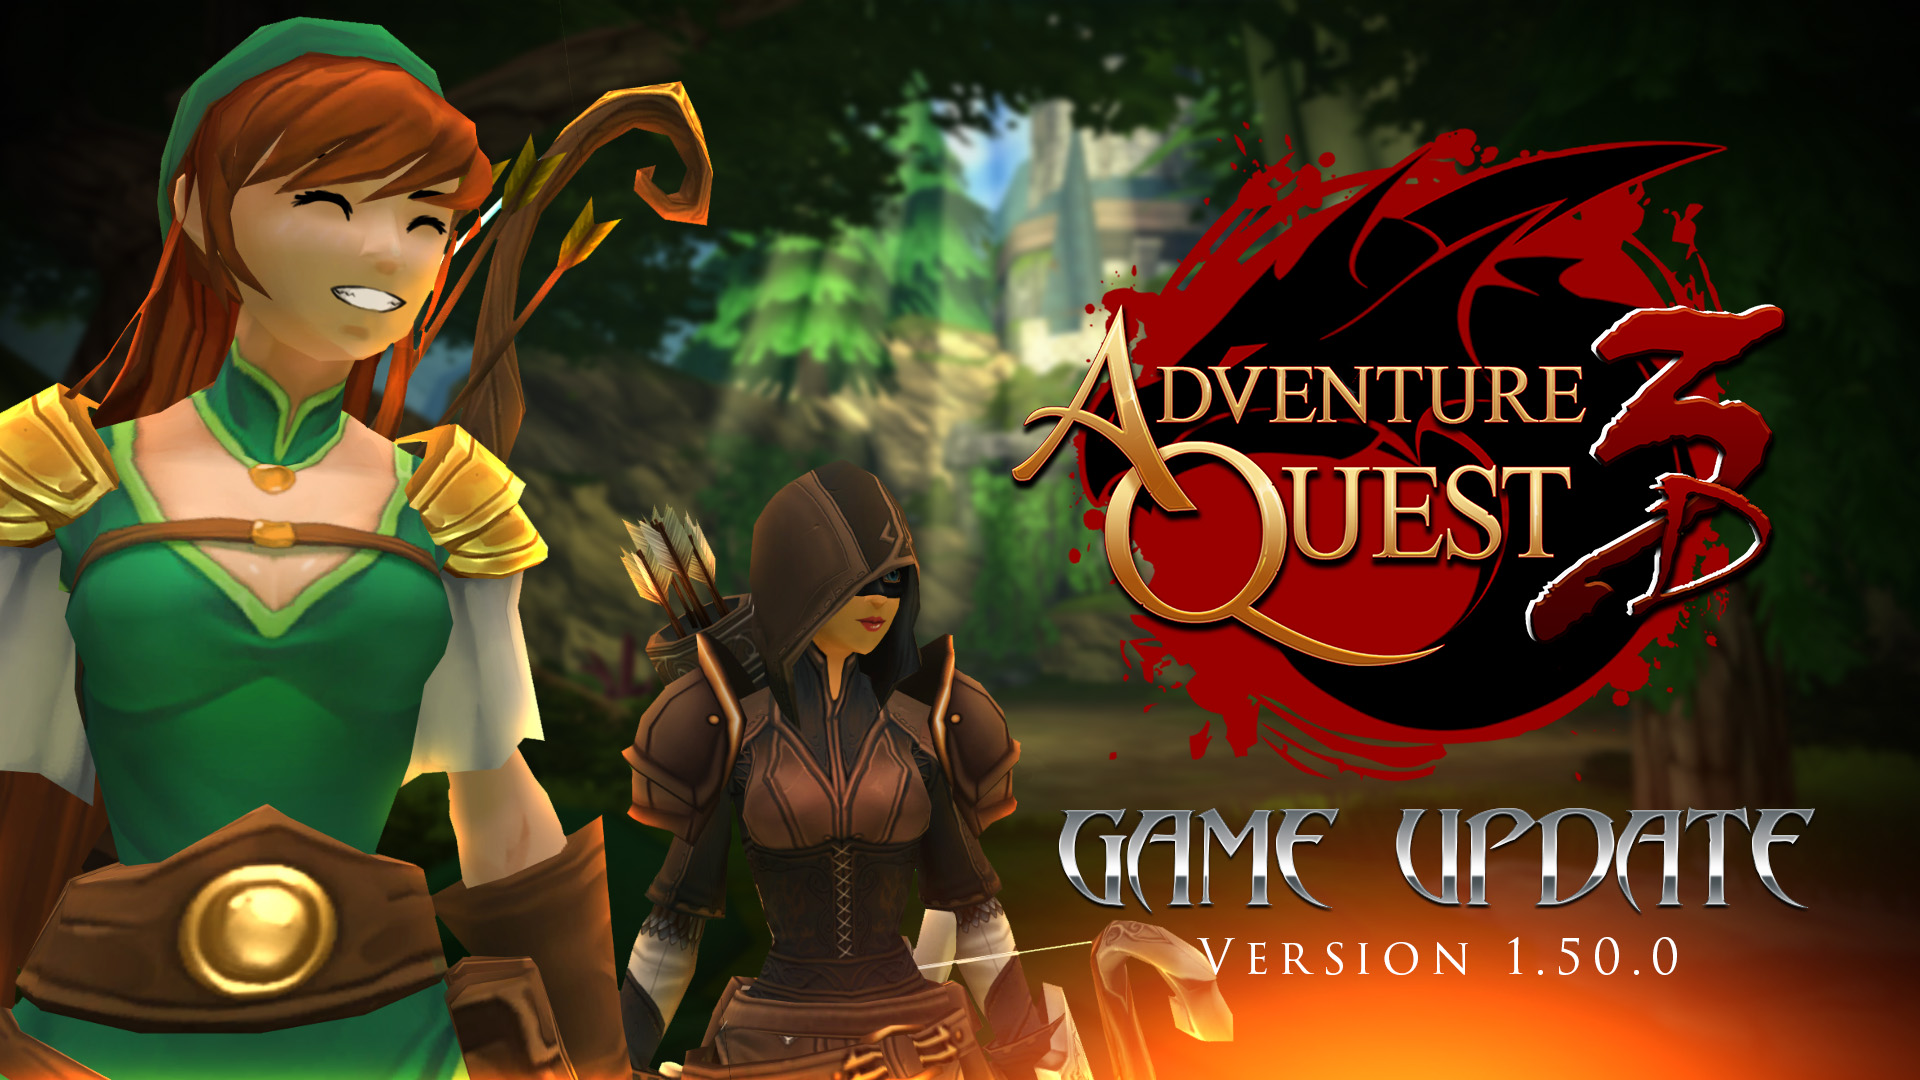 AdventureQuest 3D Version 1.50.0 Adventure Quest 3D, Cross Platform